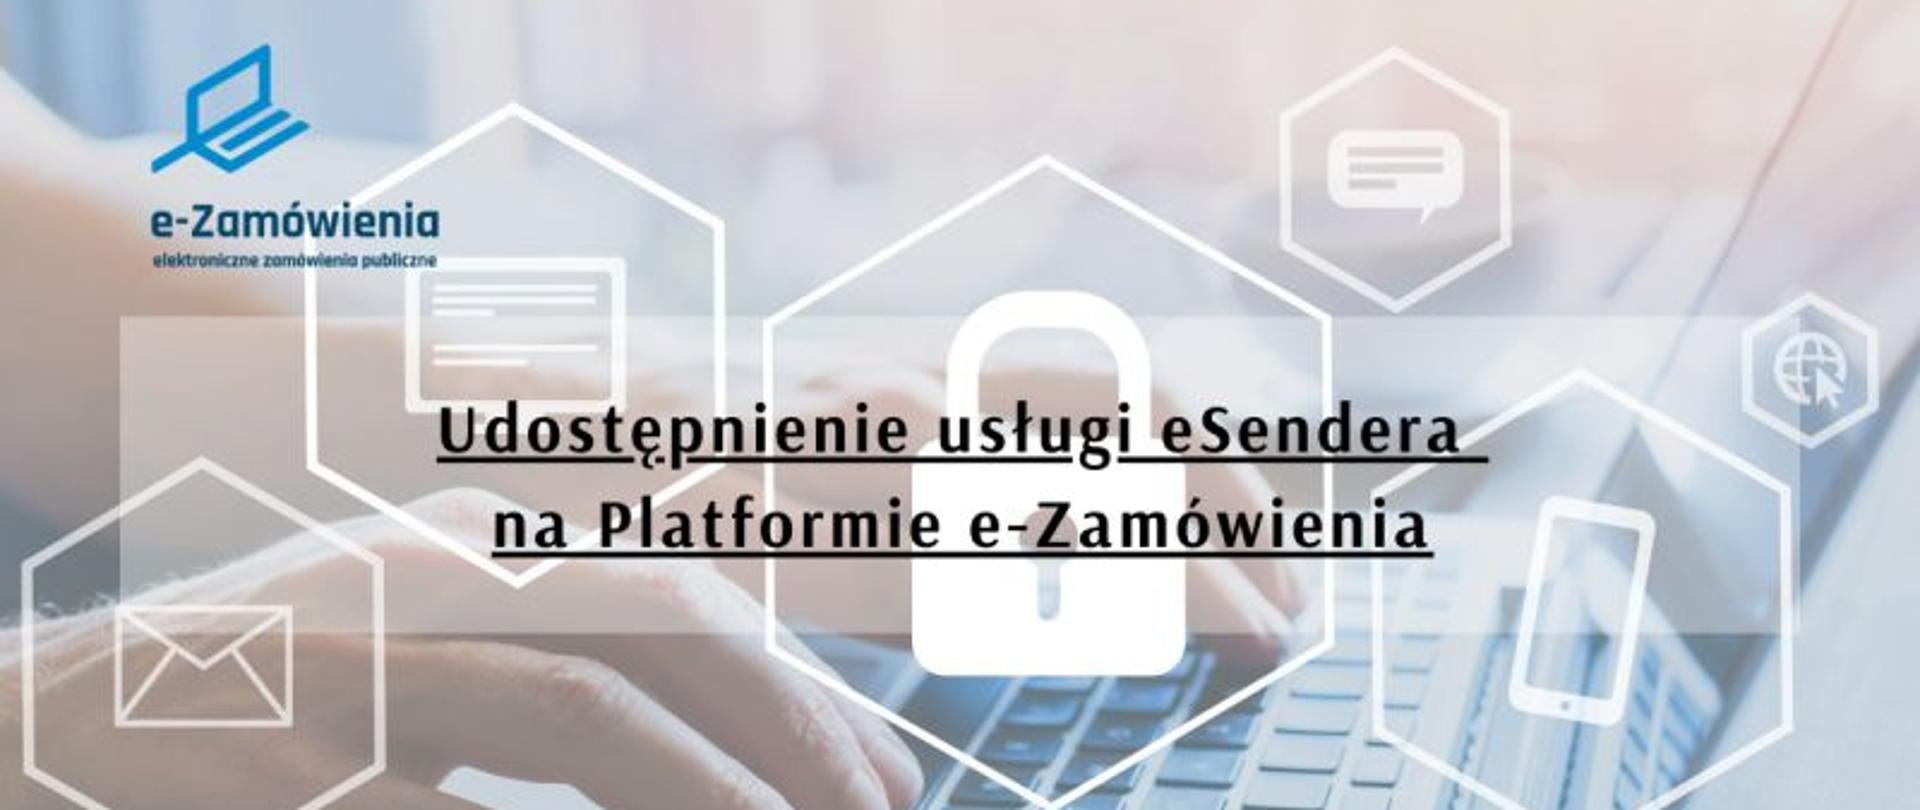 Udostępnienie usługi eSendera na Platformie e-Zamówienia
